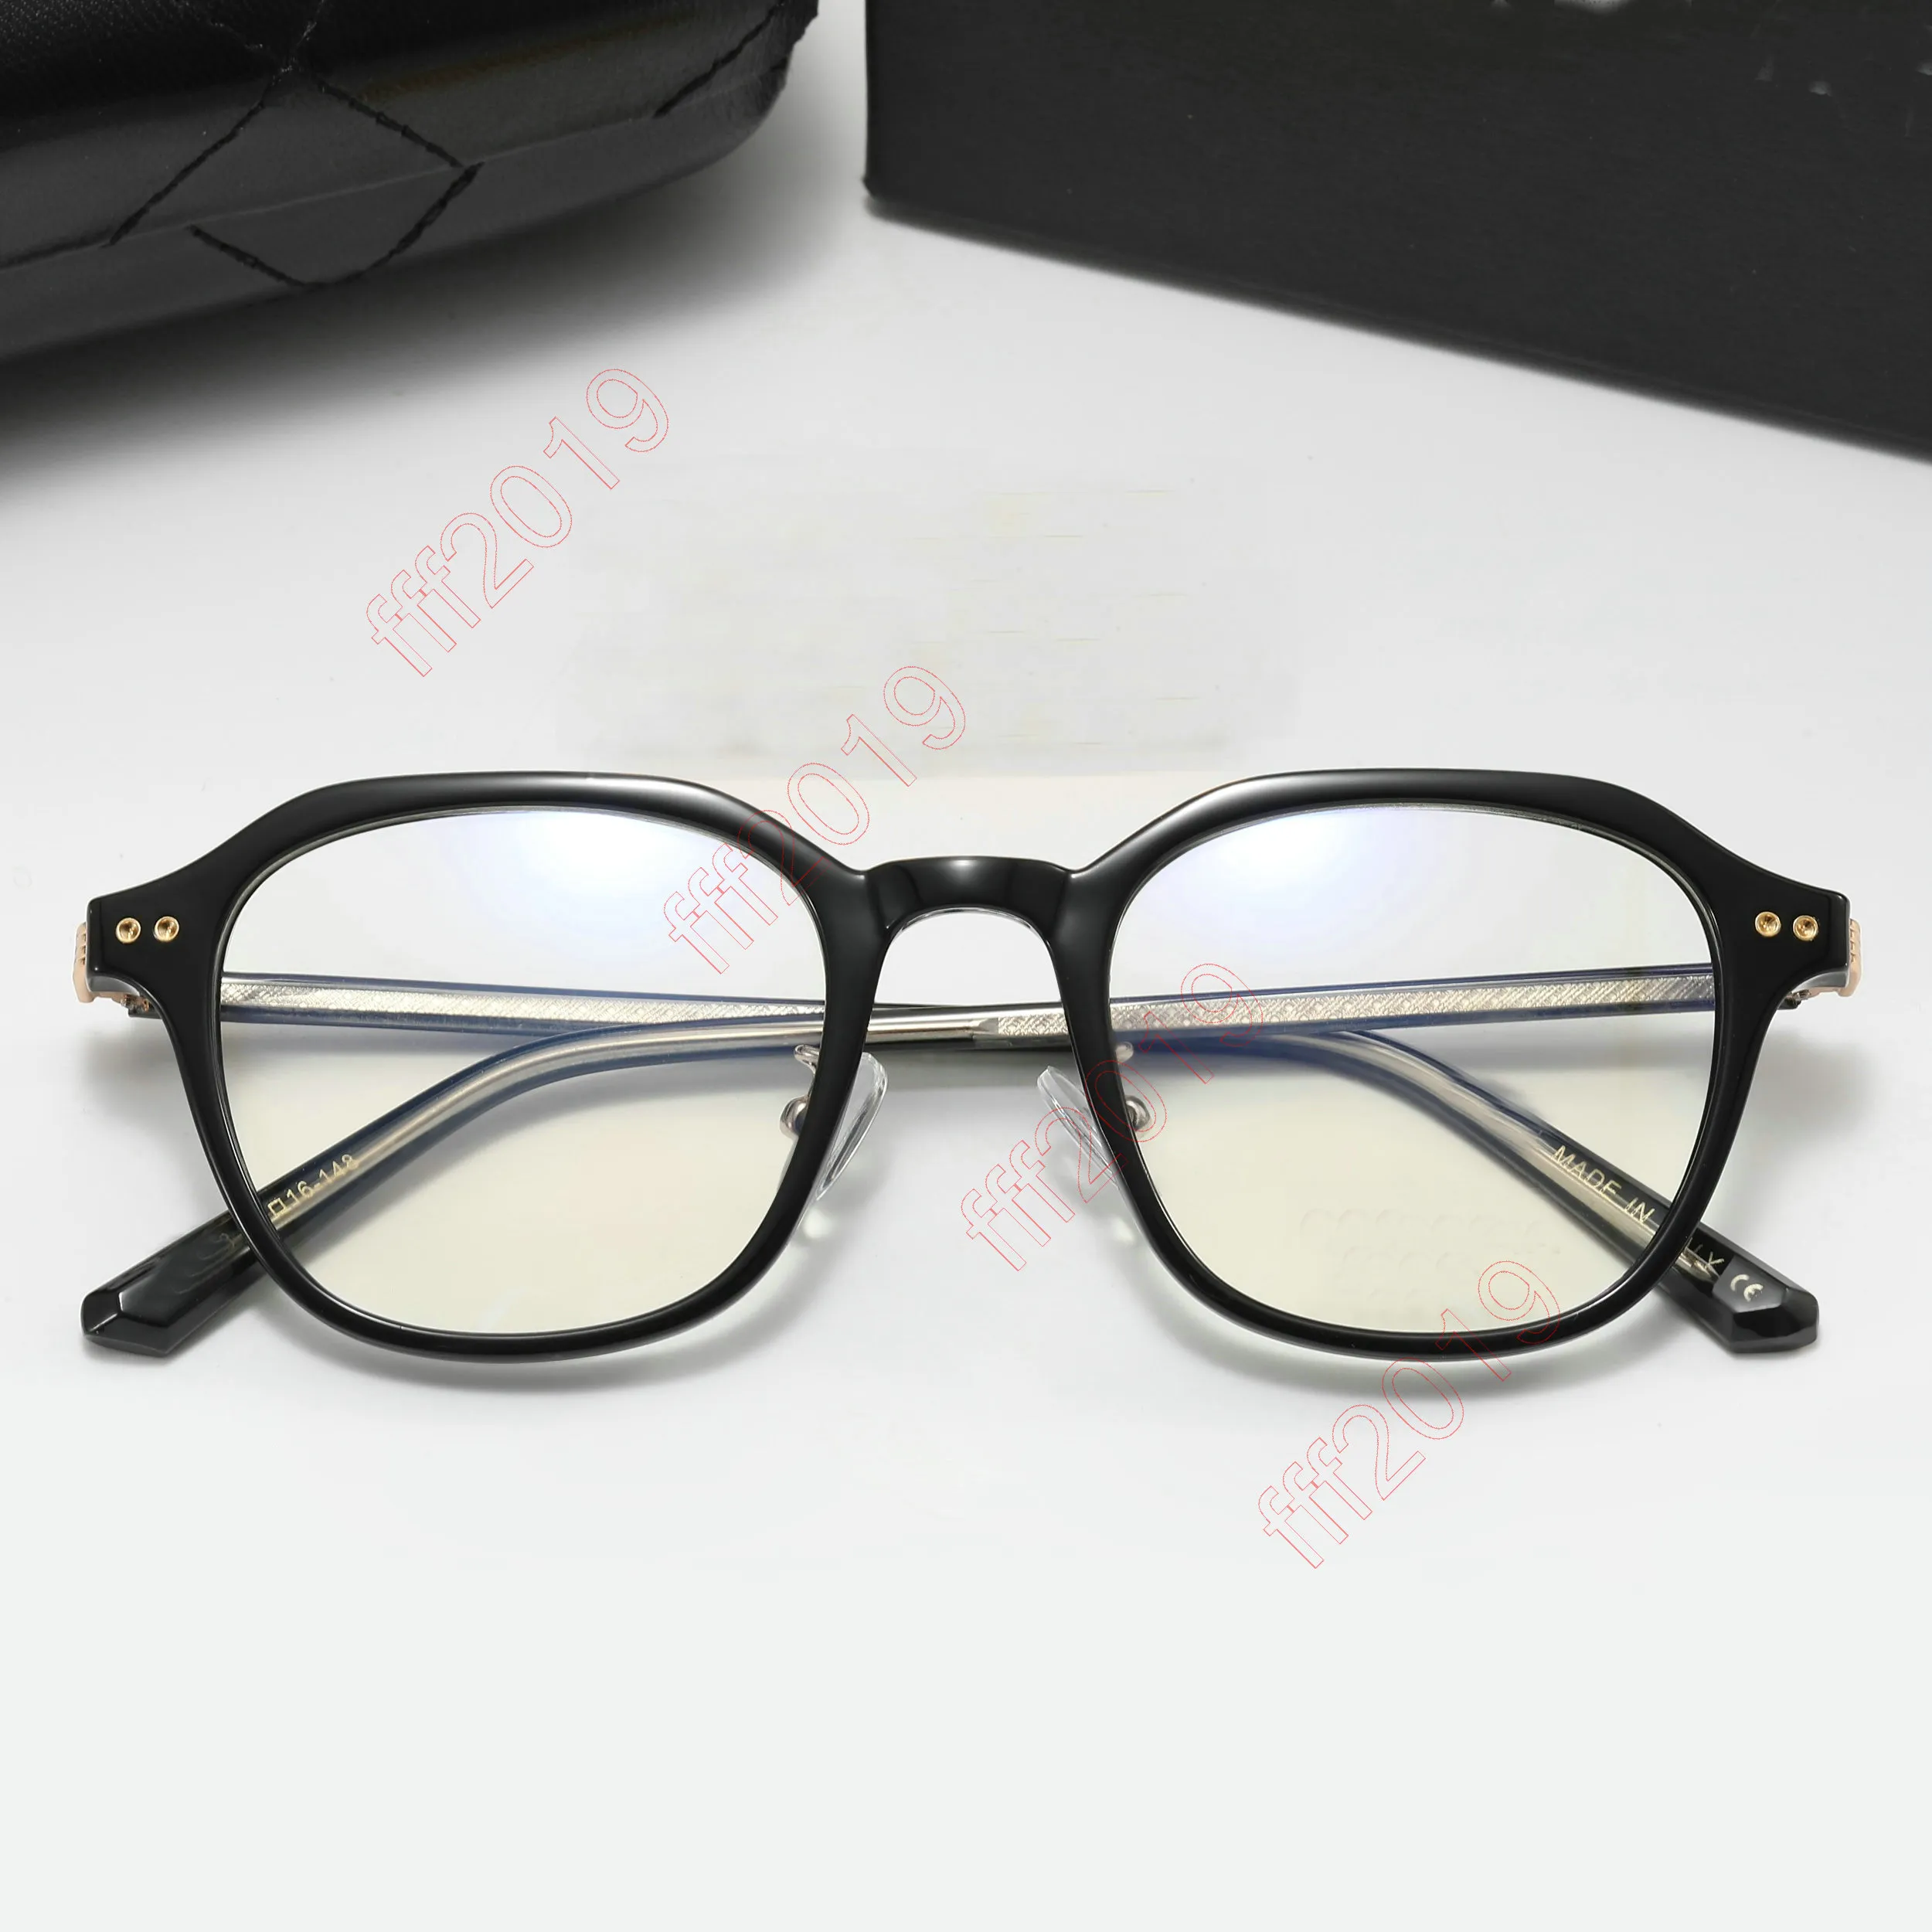 2022 lunettes de soleil de marque de mode rondes lunettes optiques femmes hommes clair anti lumière bleue bloquant les lunettes cadre prescription transparent montures de lunettes unisexe 88